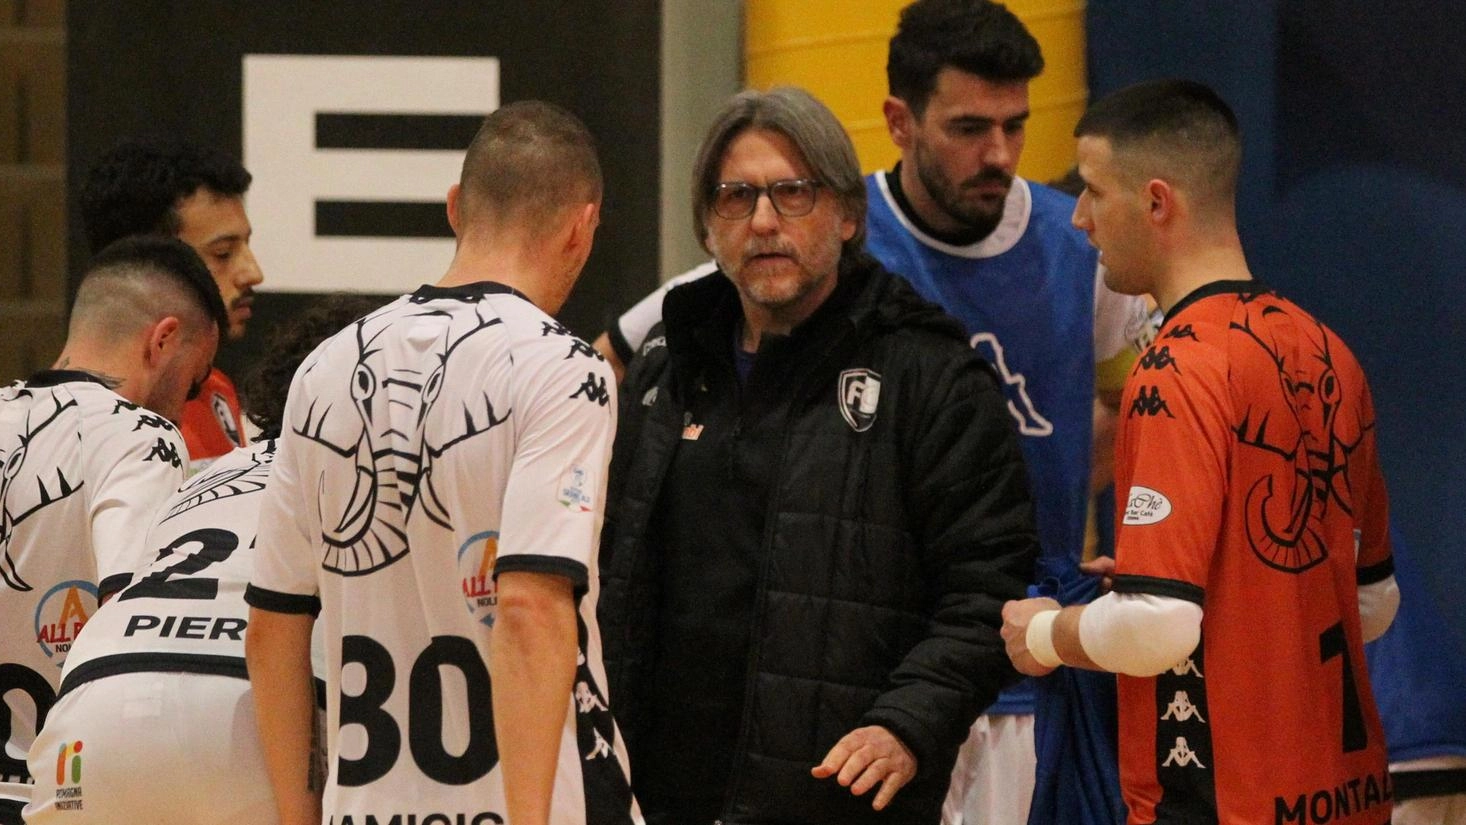 La Futsal Cesena valuta di spostare le partite casalinghe al venerdì sera per aumentare il pubblico. La squadra si prepara per la A2 Elite confermando i giocatori chiave e cercando nuovi innesti. Obiettivo: essere inseriti nel girone A per ridurre costi e trasferte.